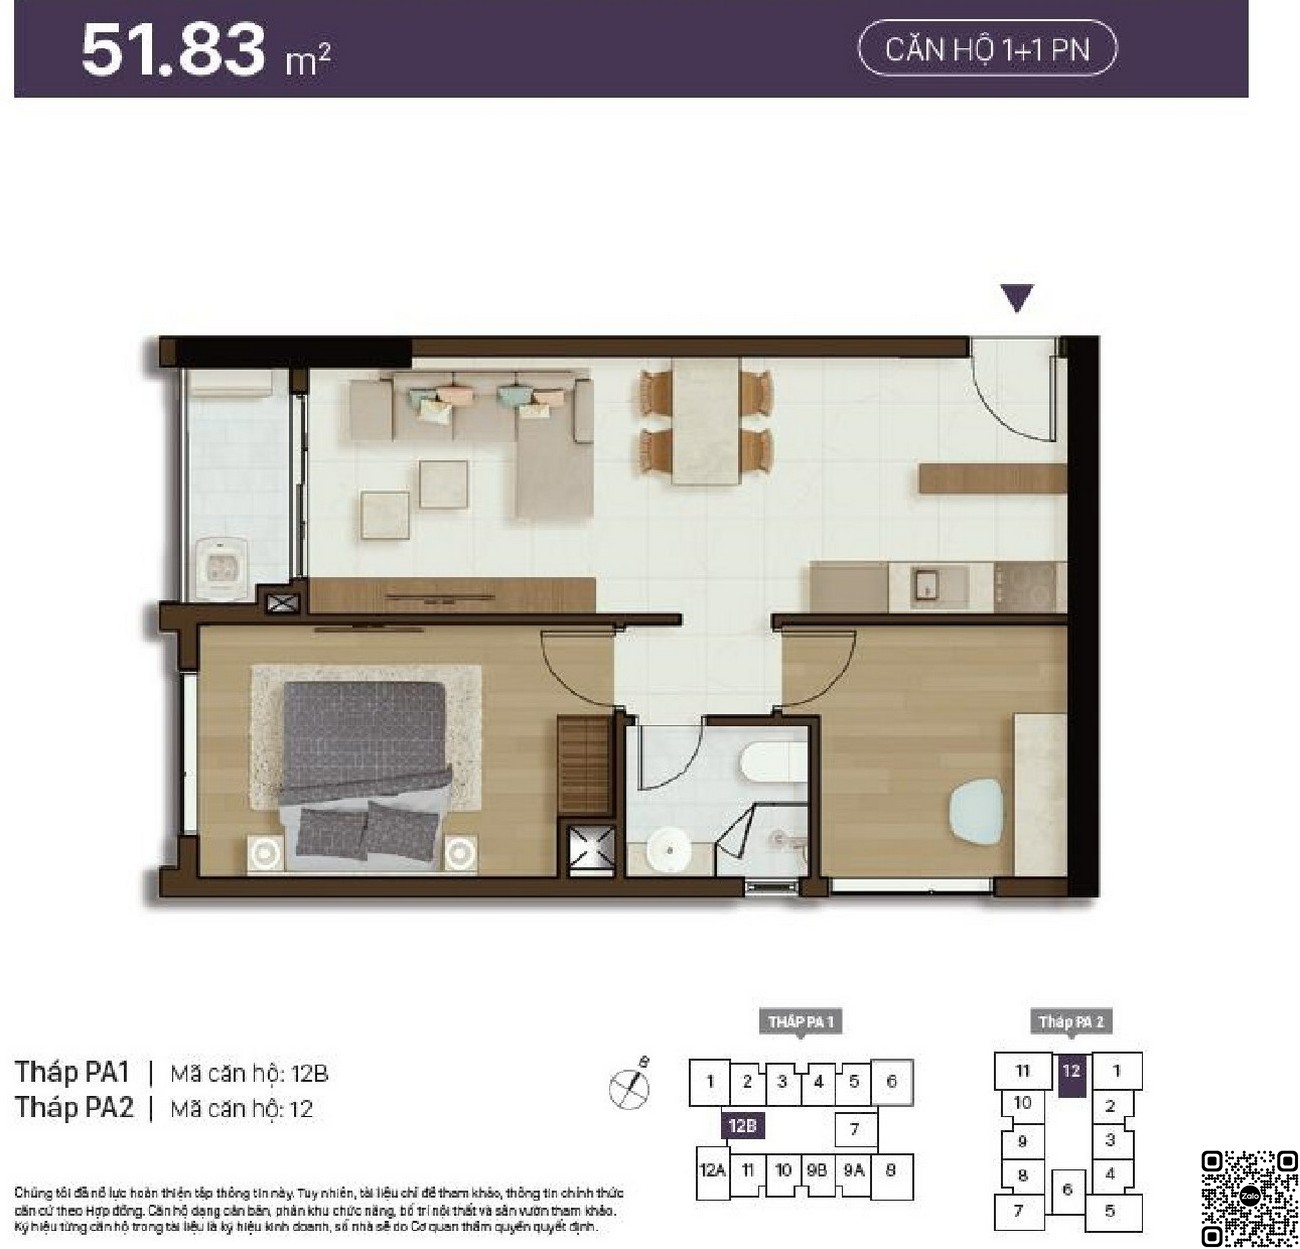 Thiết kế chi tiết căn hộ 1+1 phòng ngủ diện tích 51,83m²